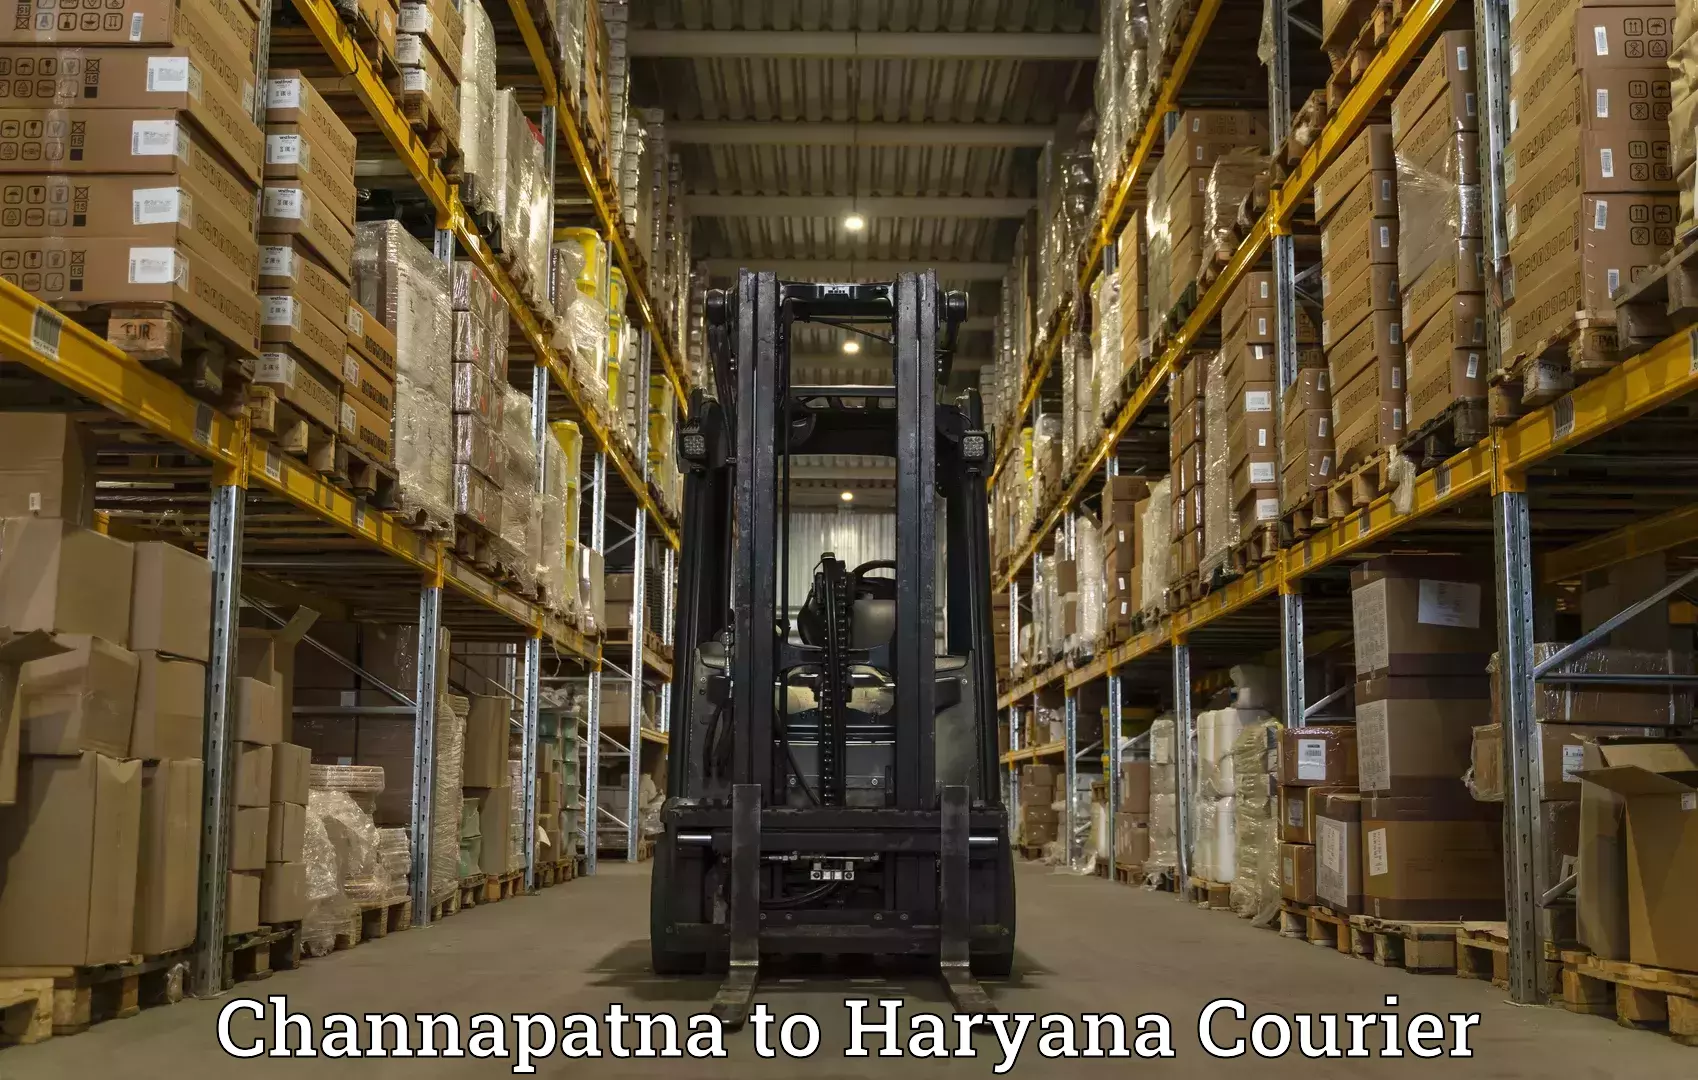 Automated shipping Channapatna to Chaudhary Charan Singh Haryana Agricultural University Hisar